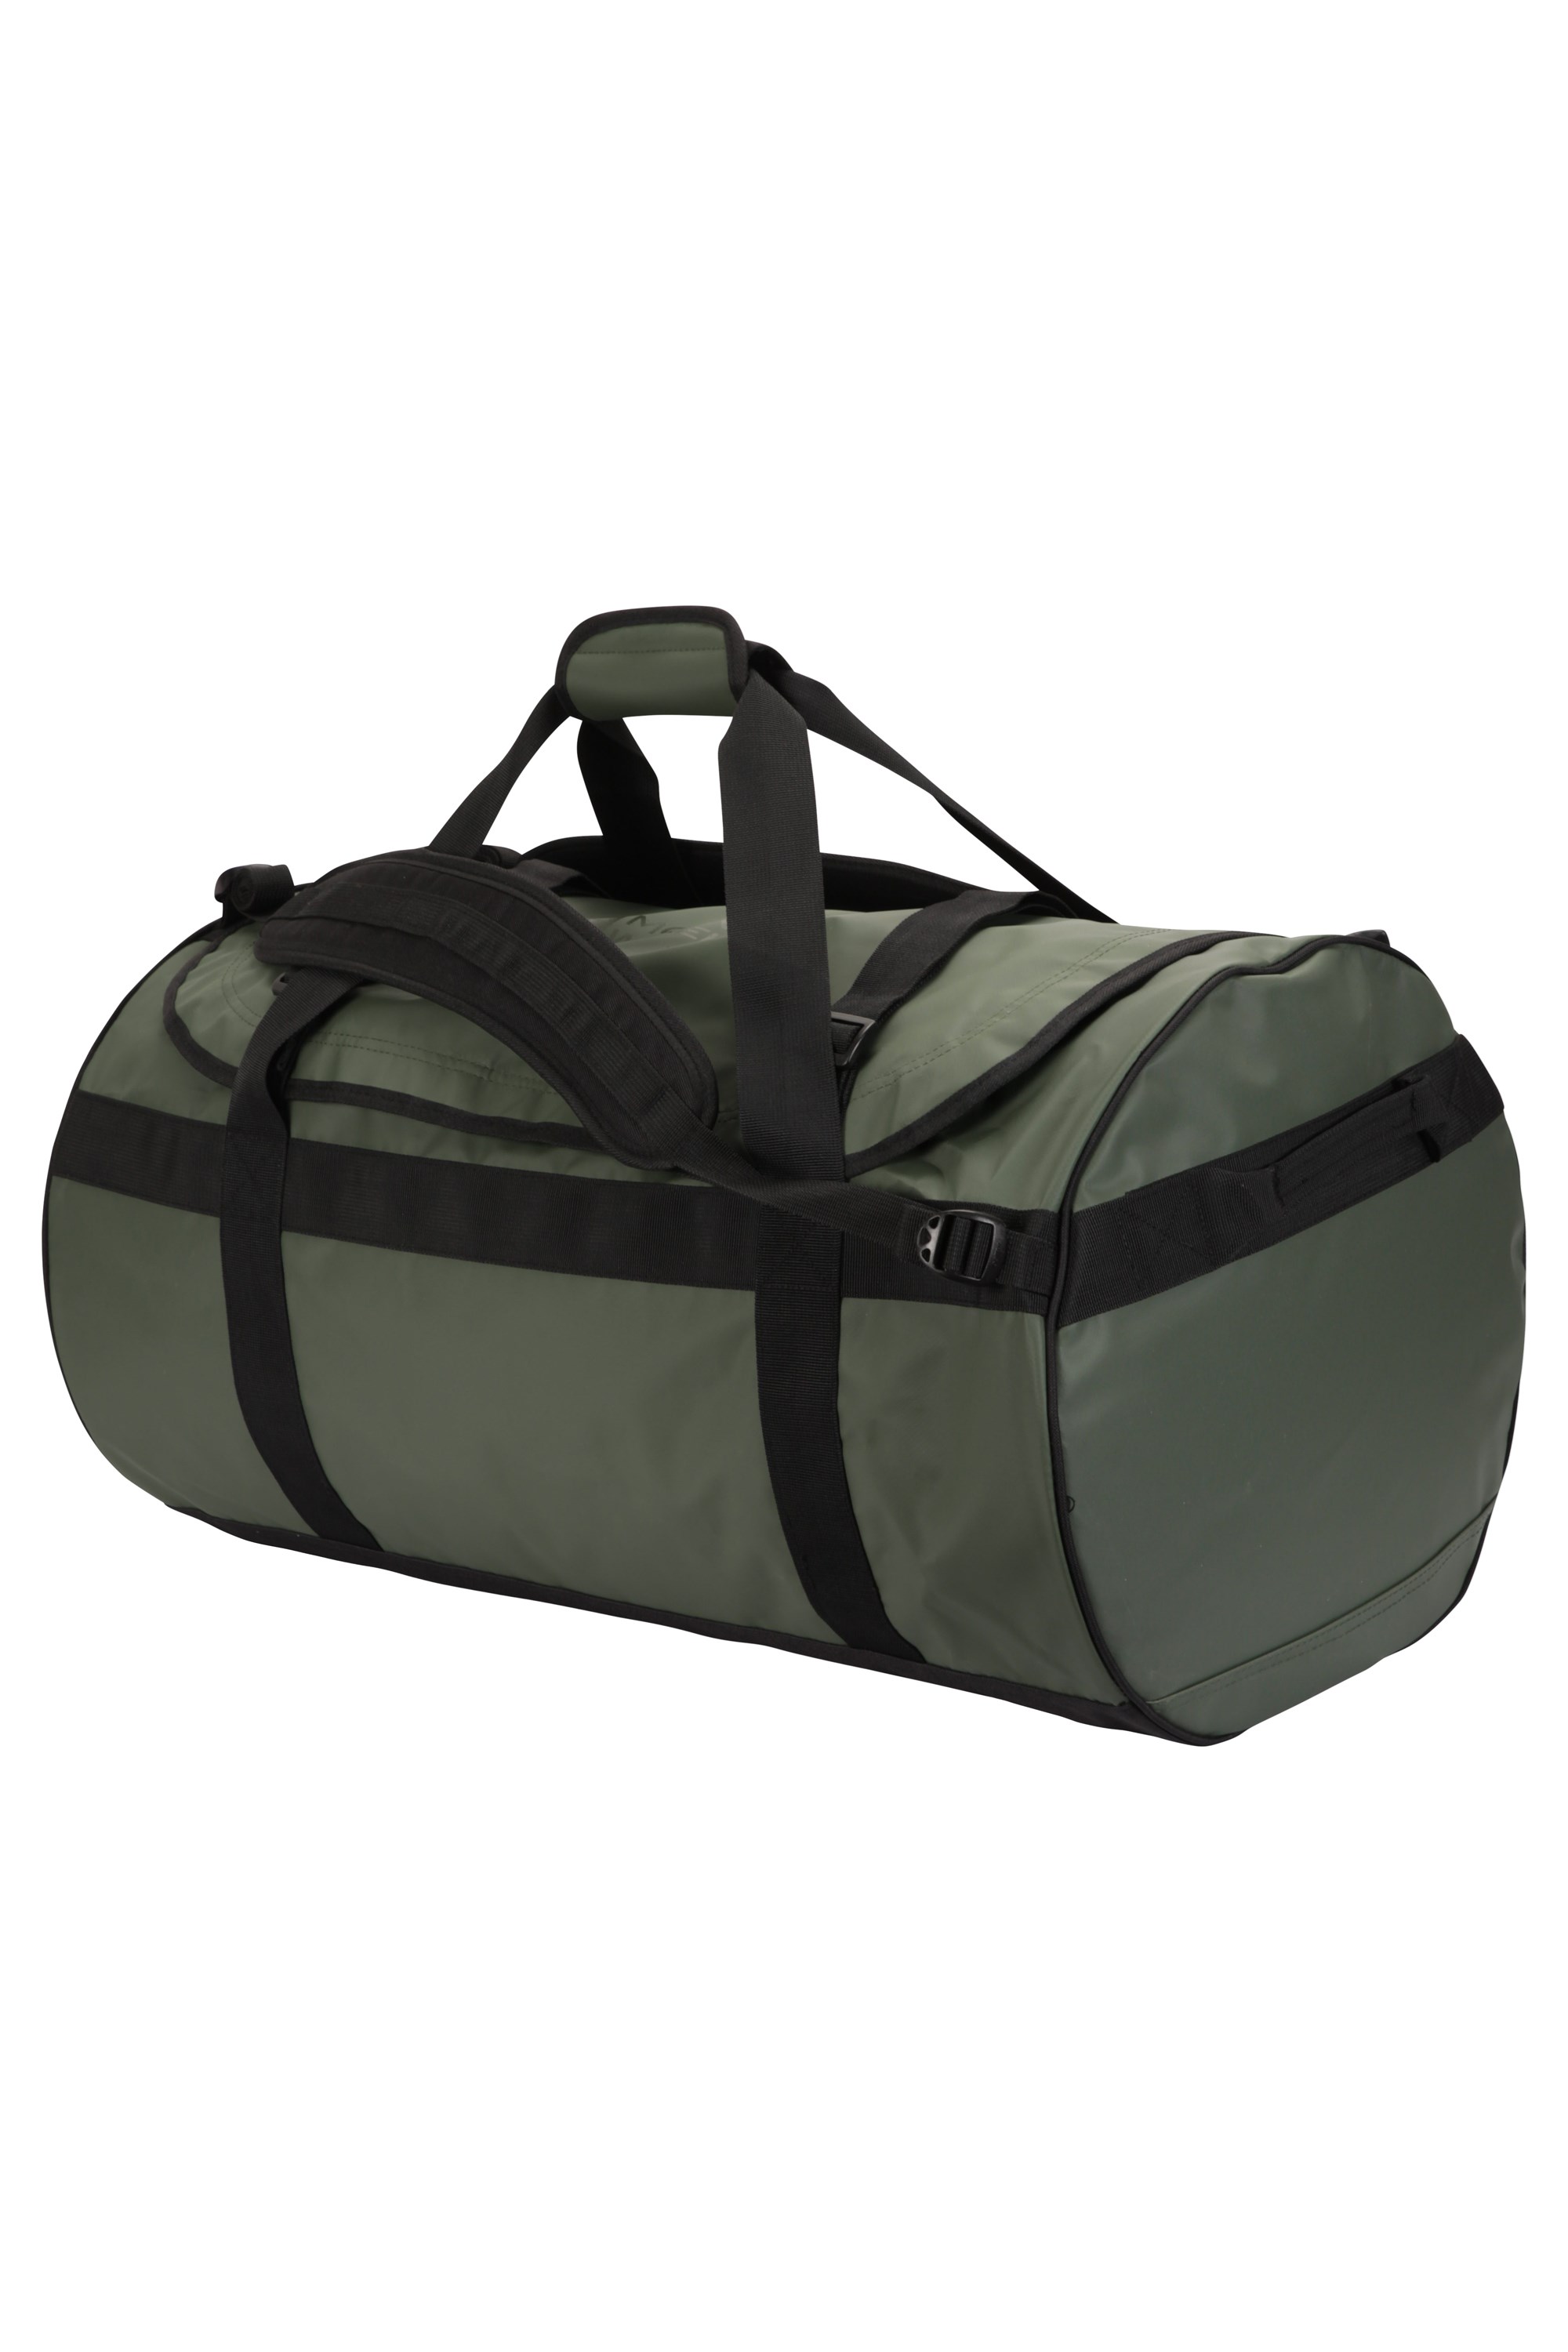 Cargo Bag - 90 Litres - Green